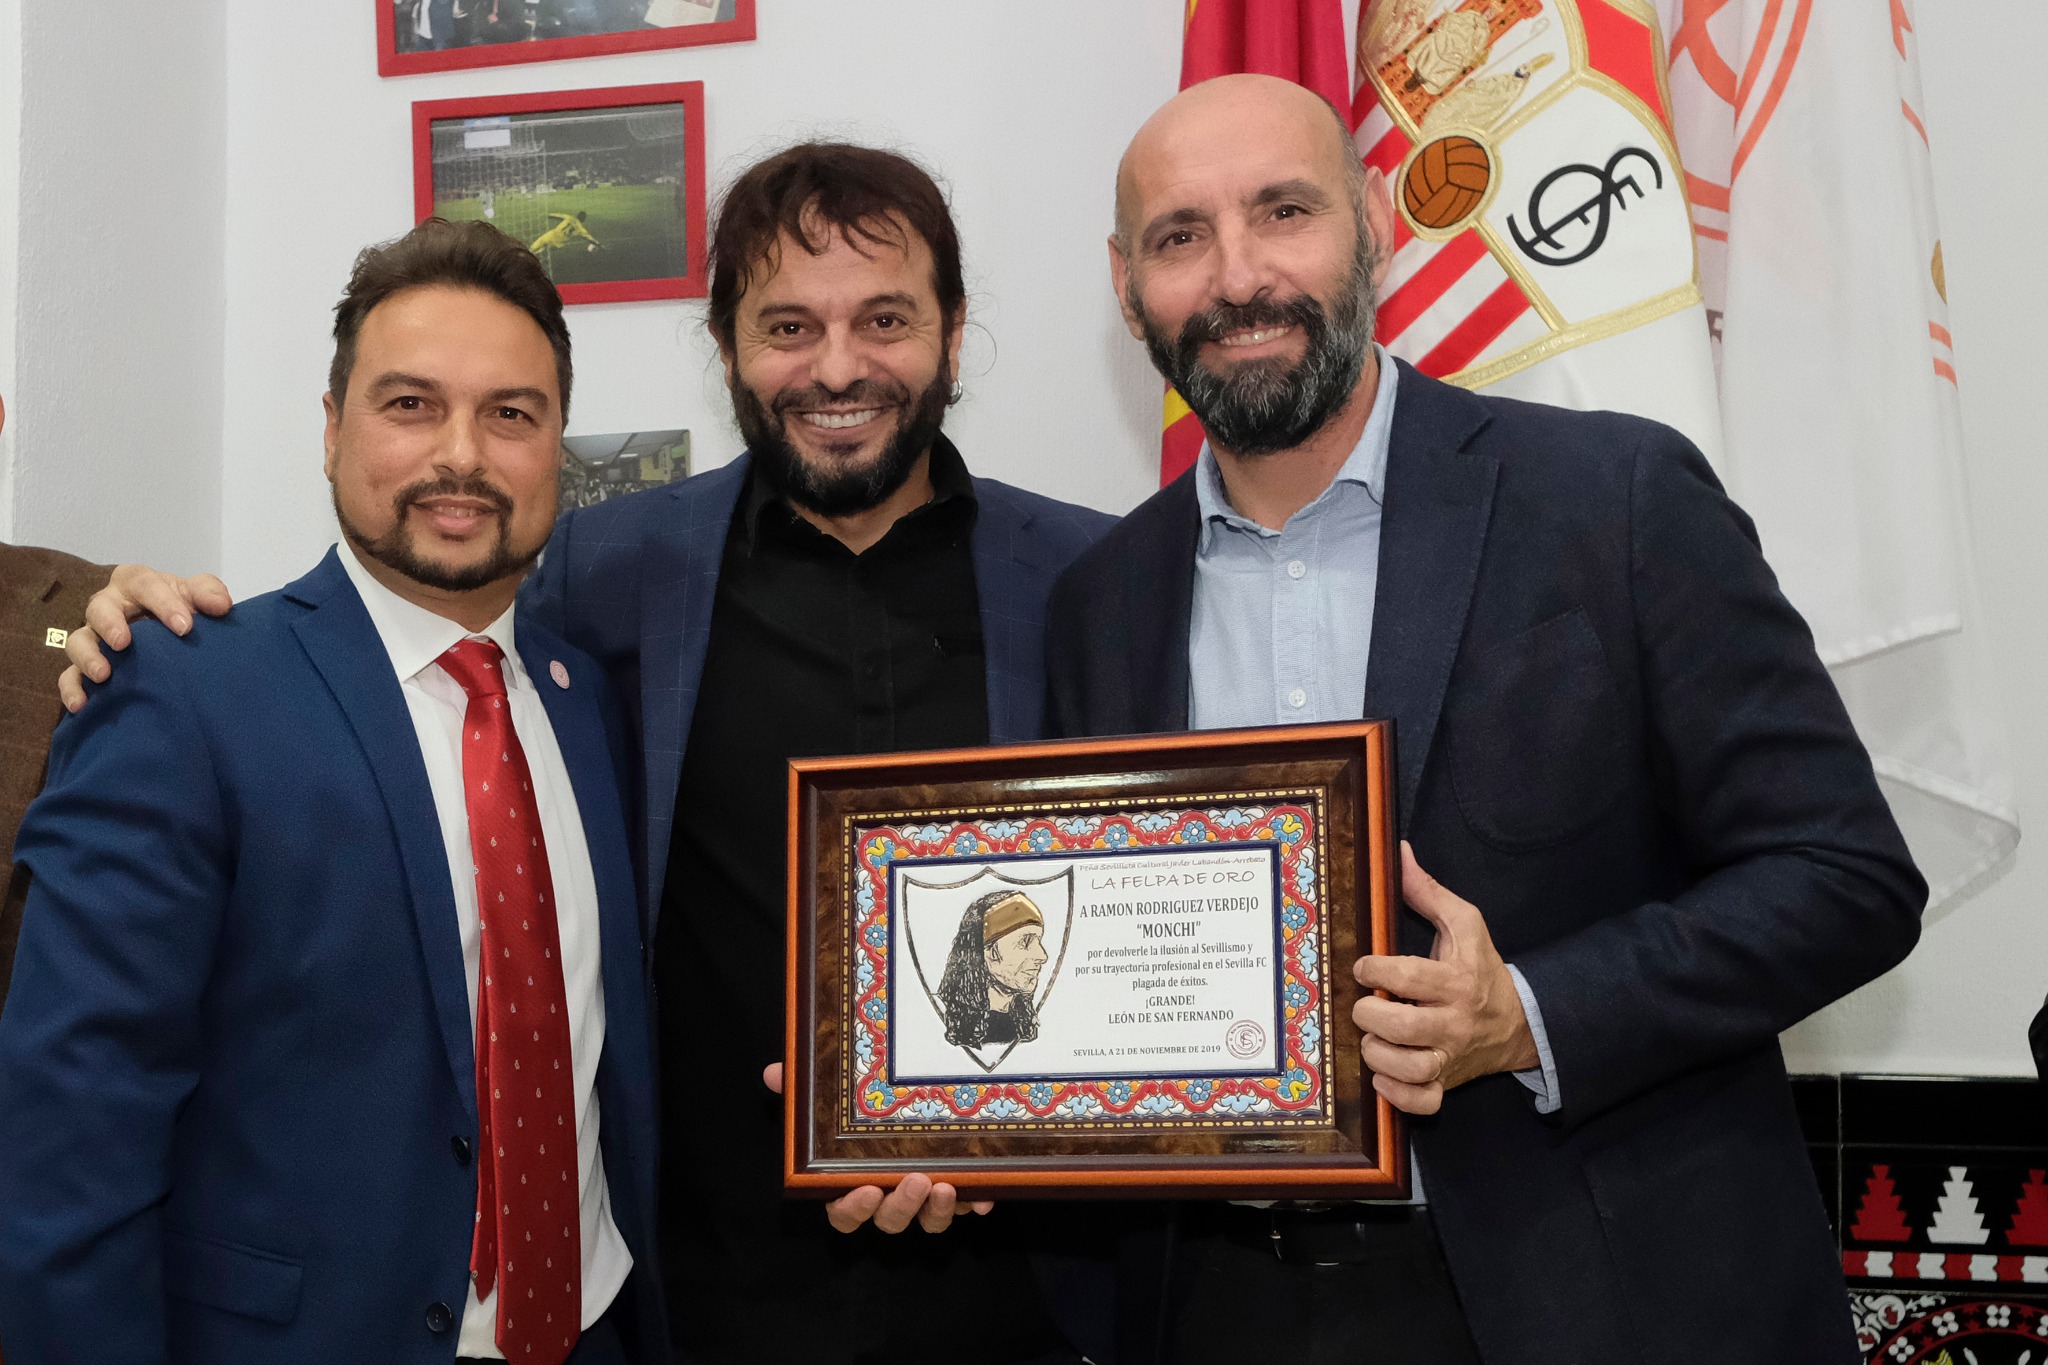 Monchi recibe la III Felpa de Oro en la PS El Arrebato